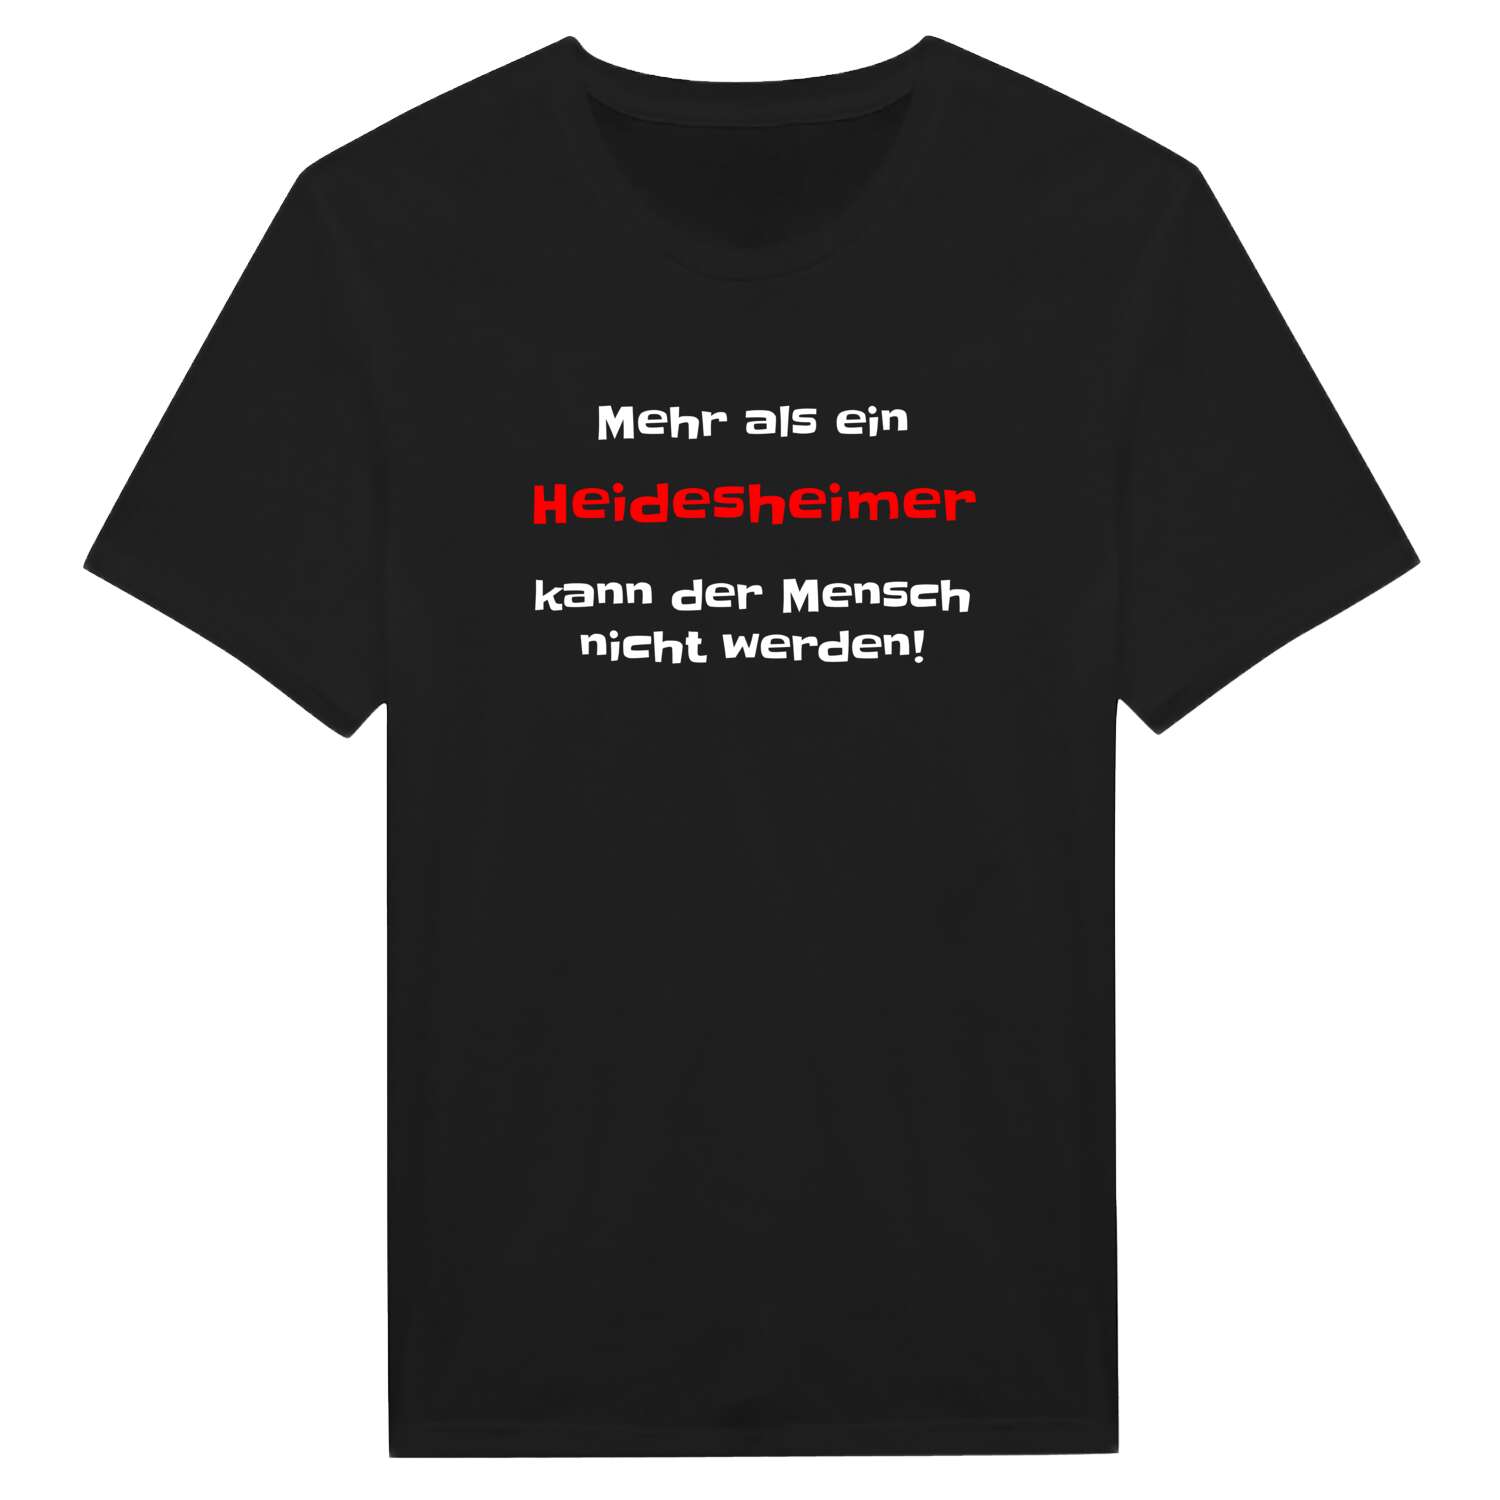 Heidesheim T-Shirt »Mehr als ein«